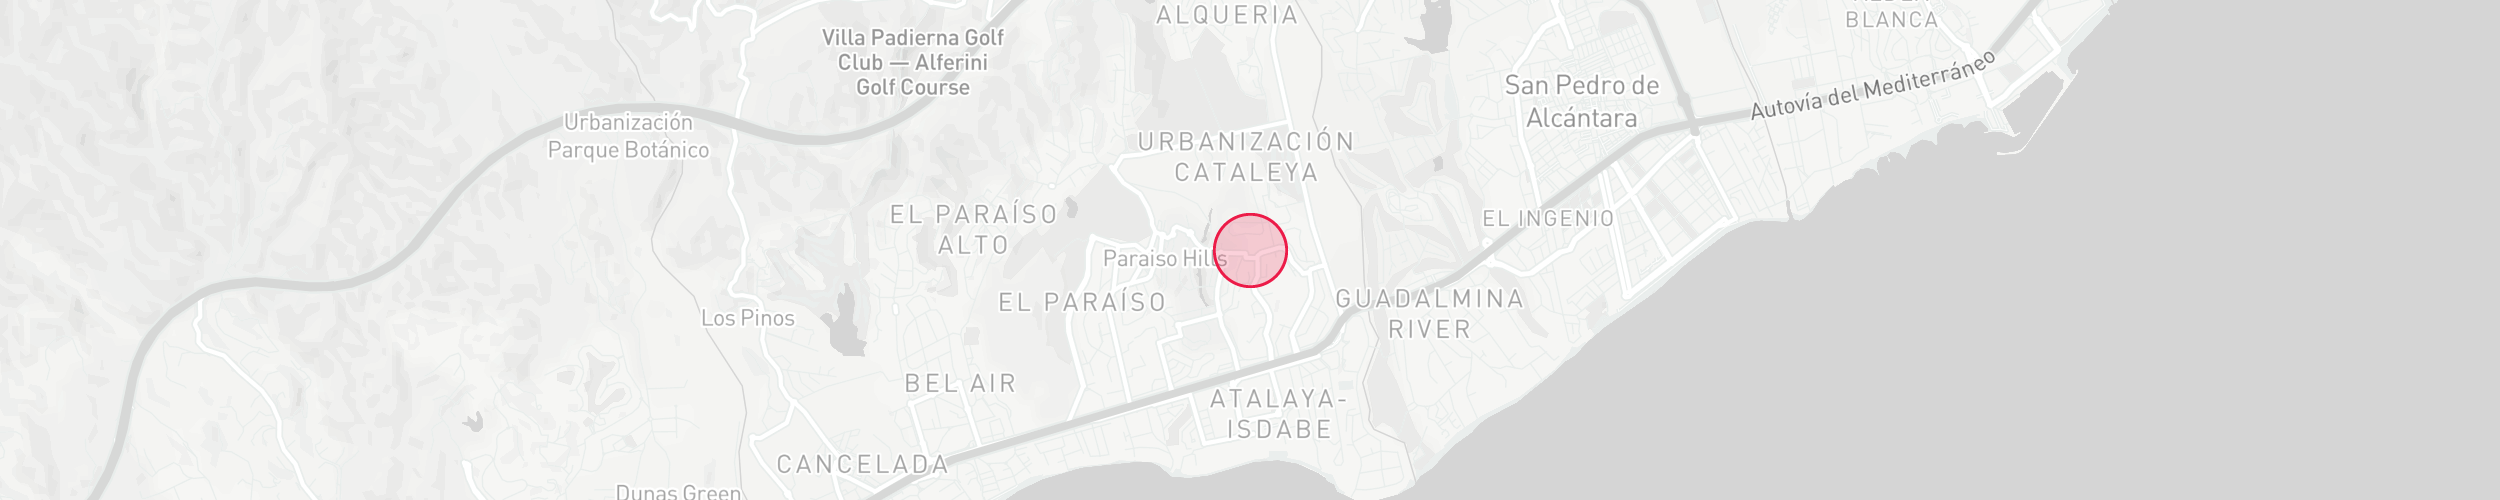 Property Location Map - Nueva Atalaya